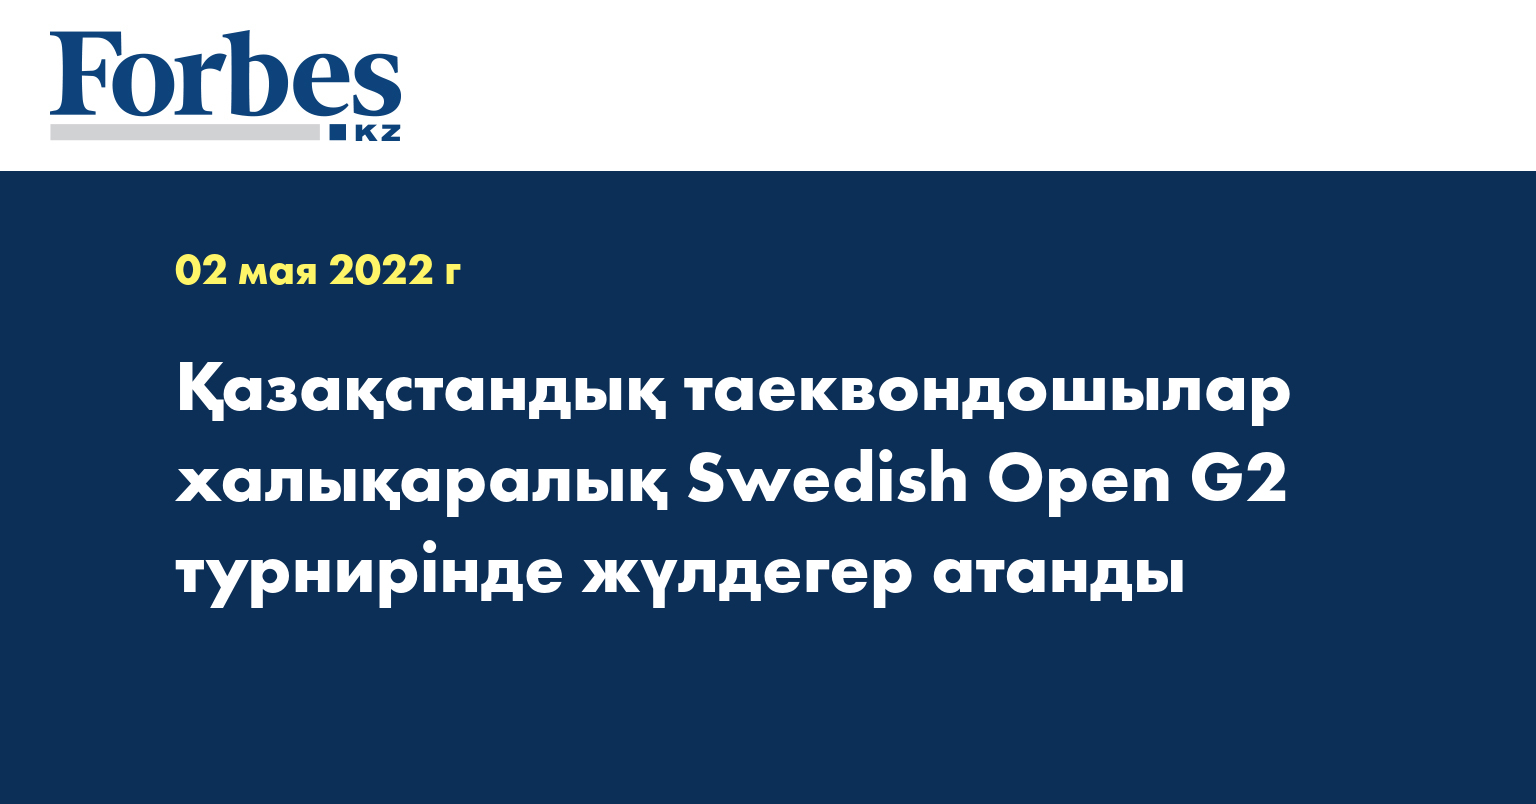 Қазақстандық таеквондошылар халықаралық Swedish Open G2 турнирінде жүлдегер атанды